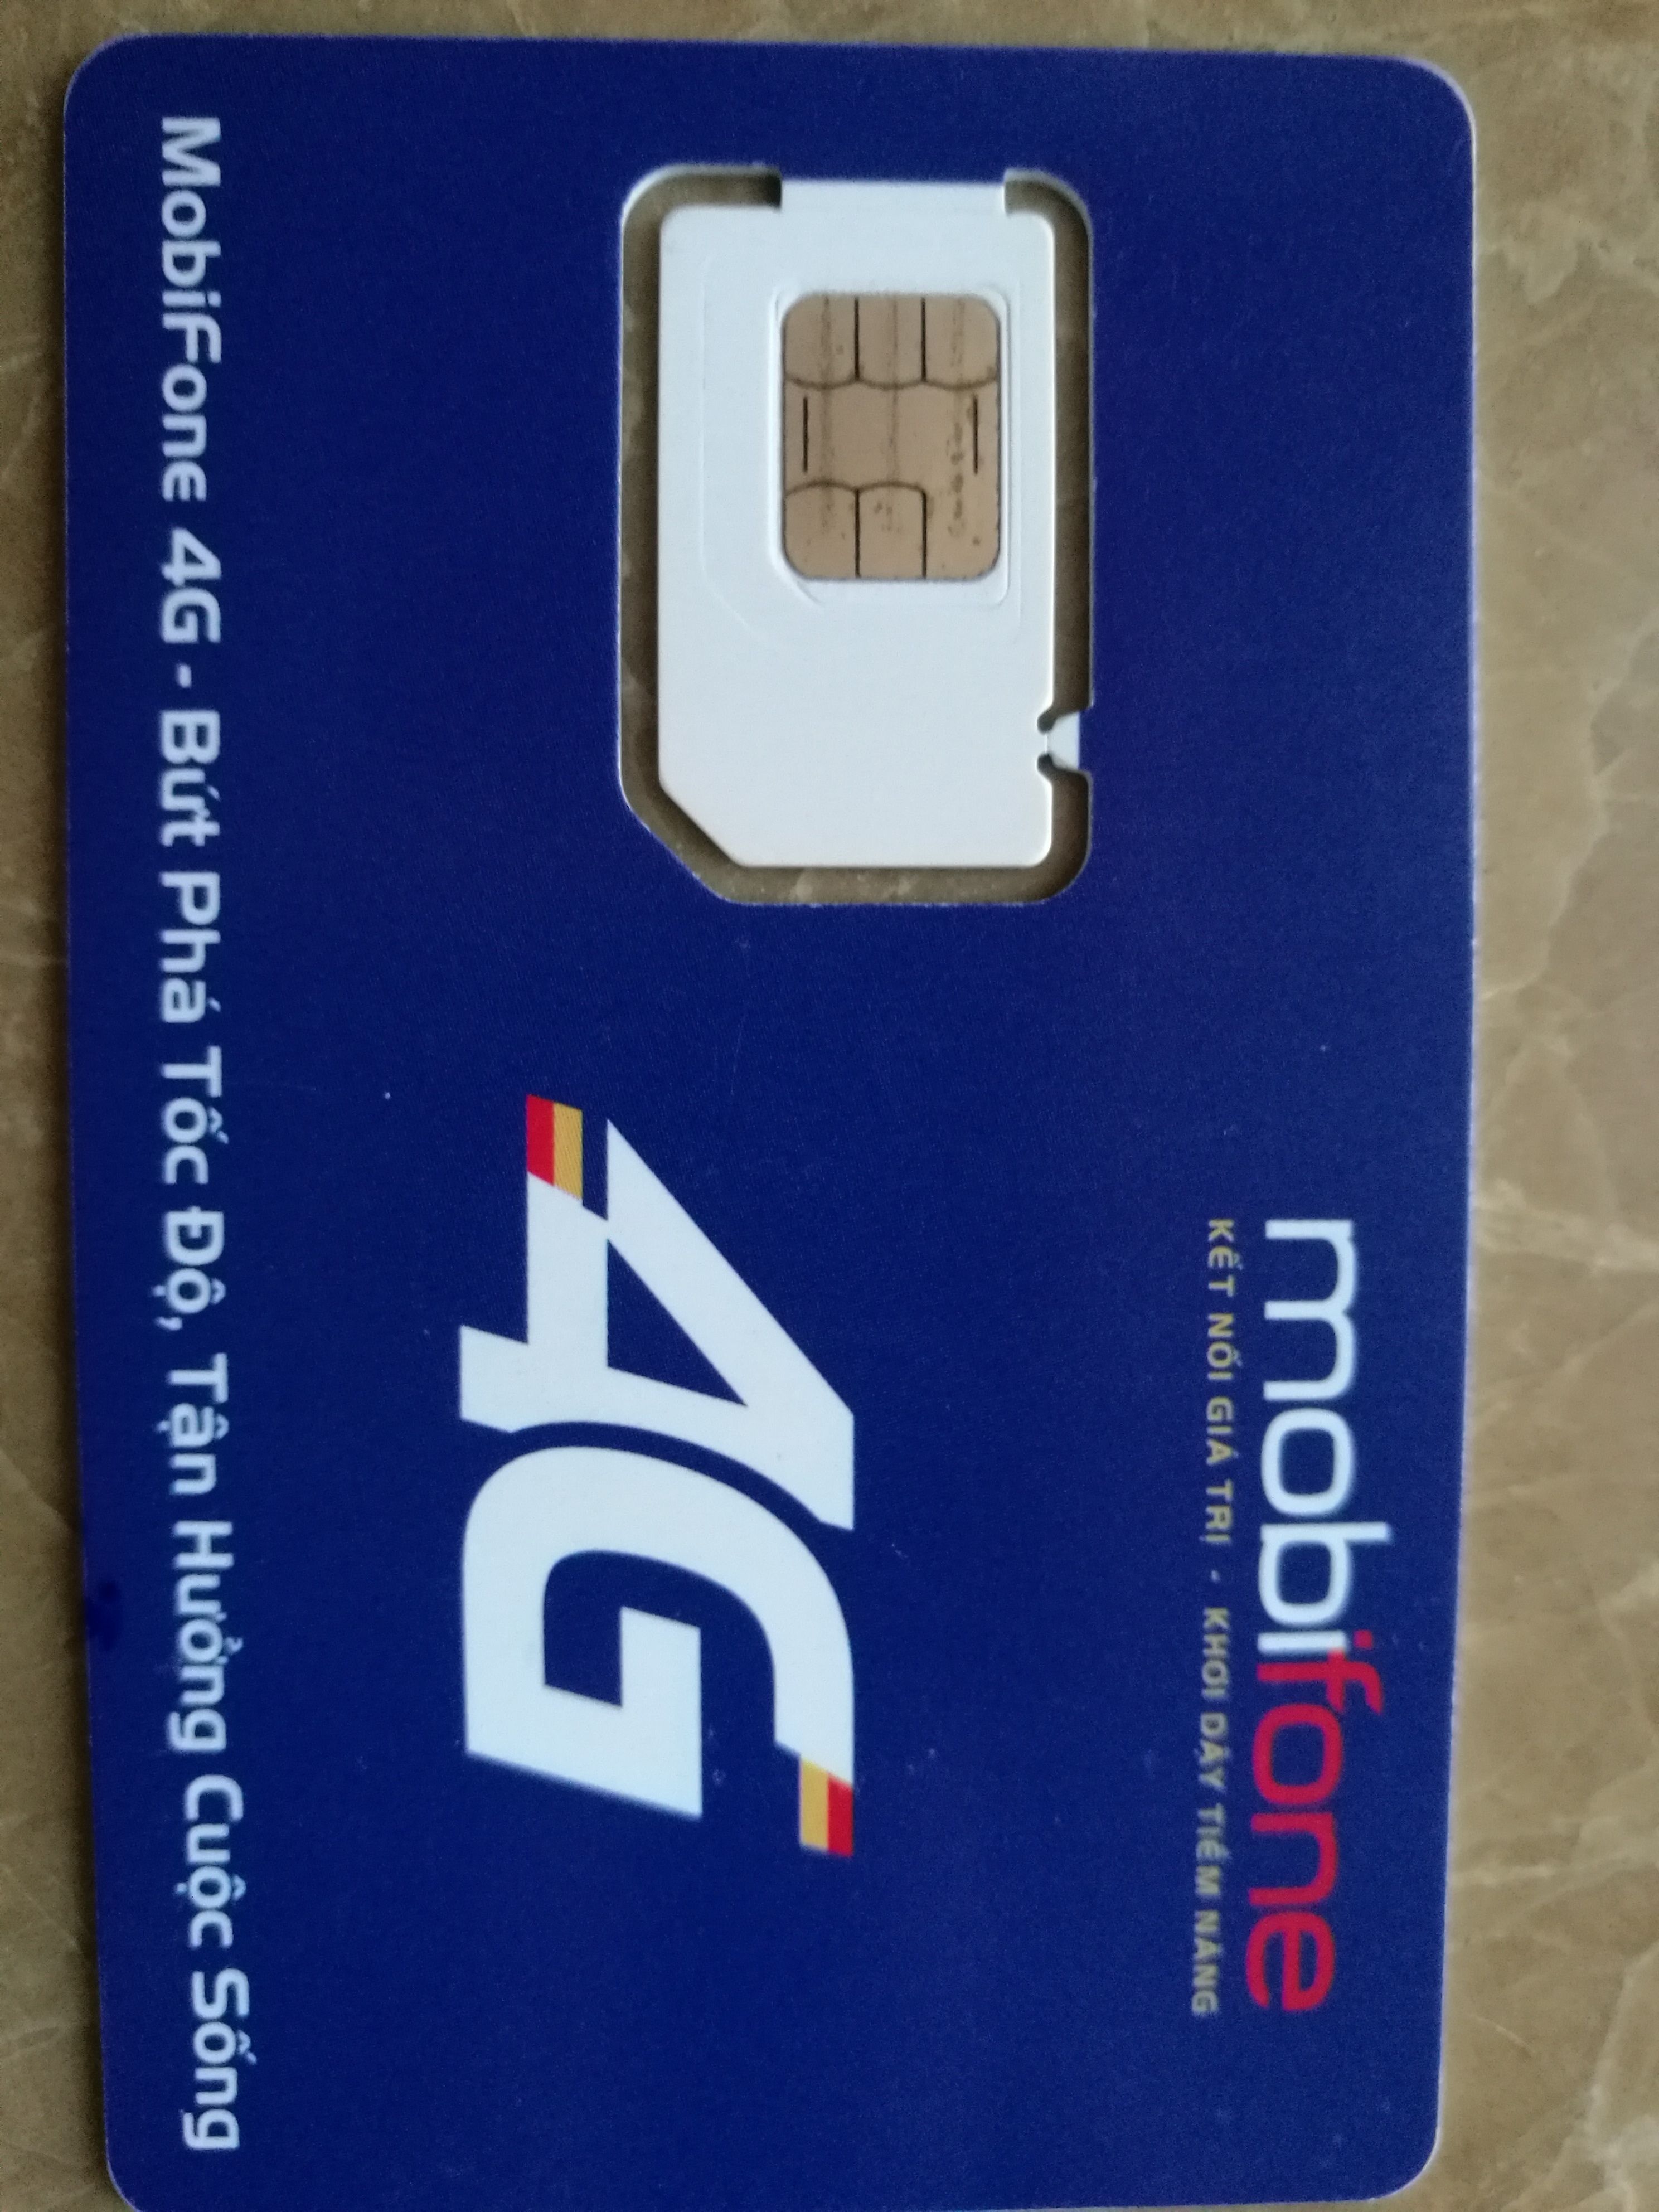 国内买的越南mobifone上网卡可以到当地去购